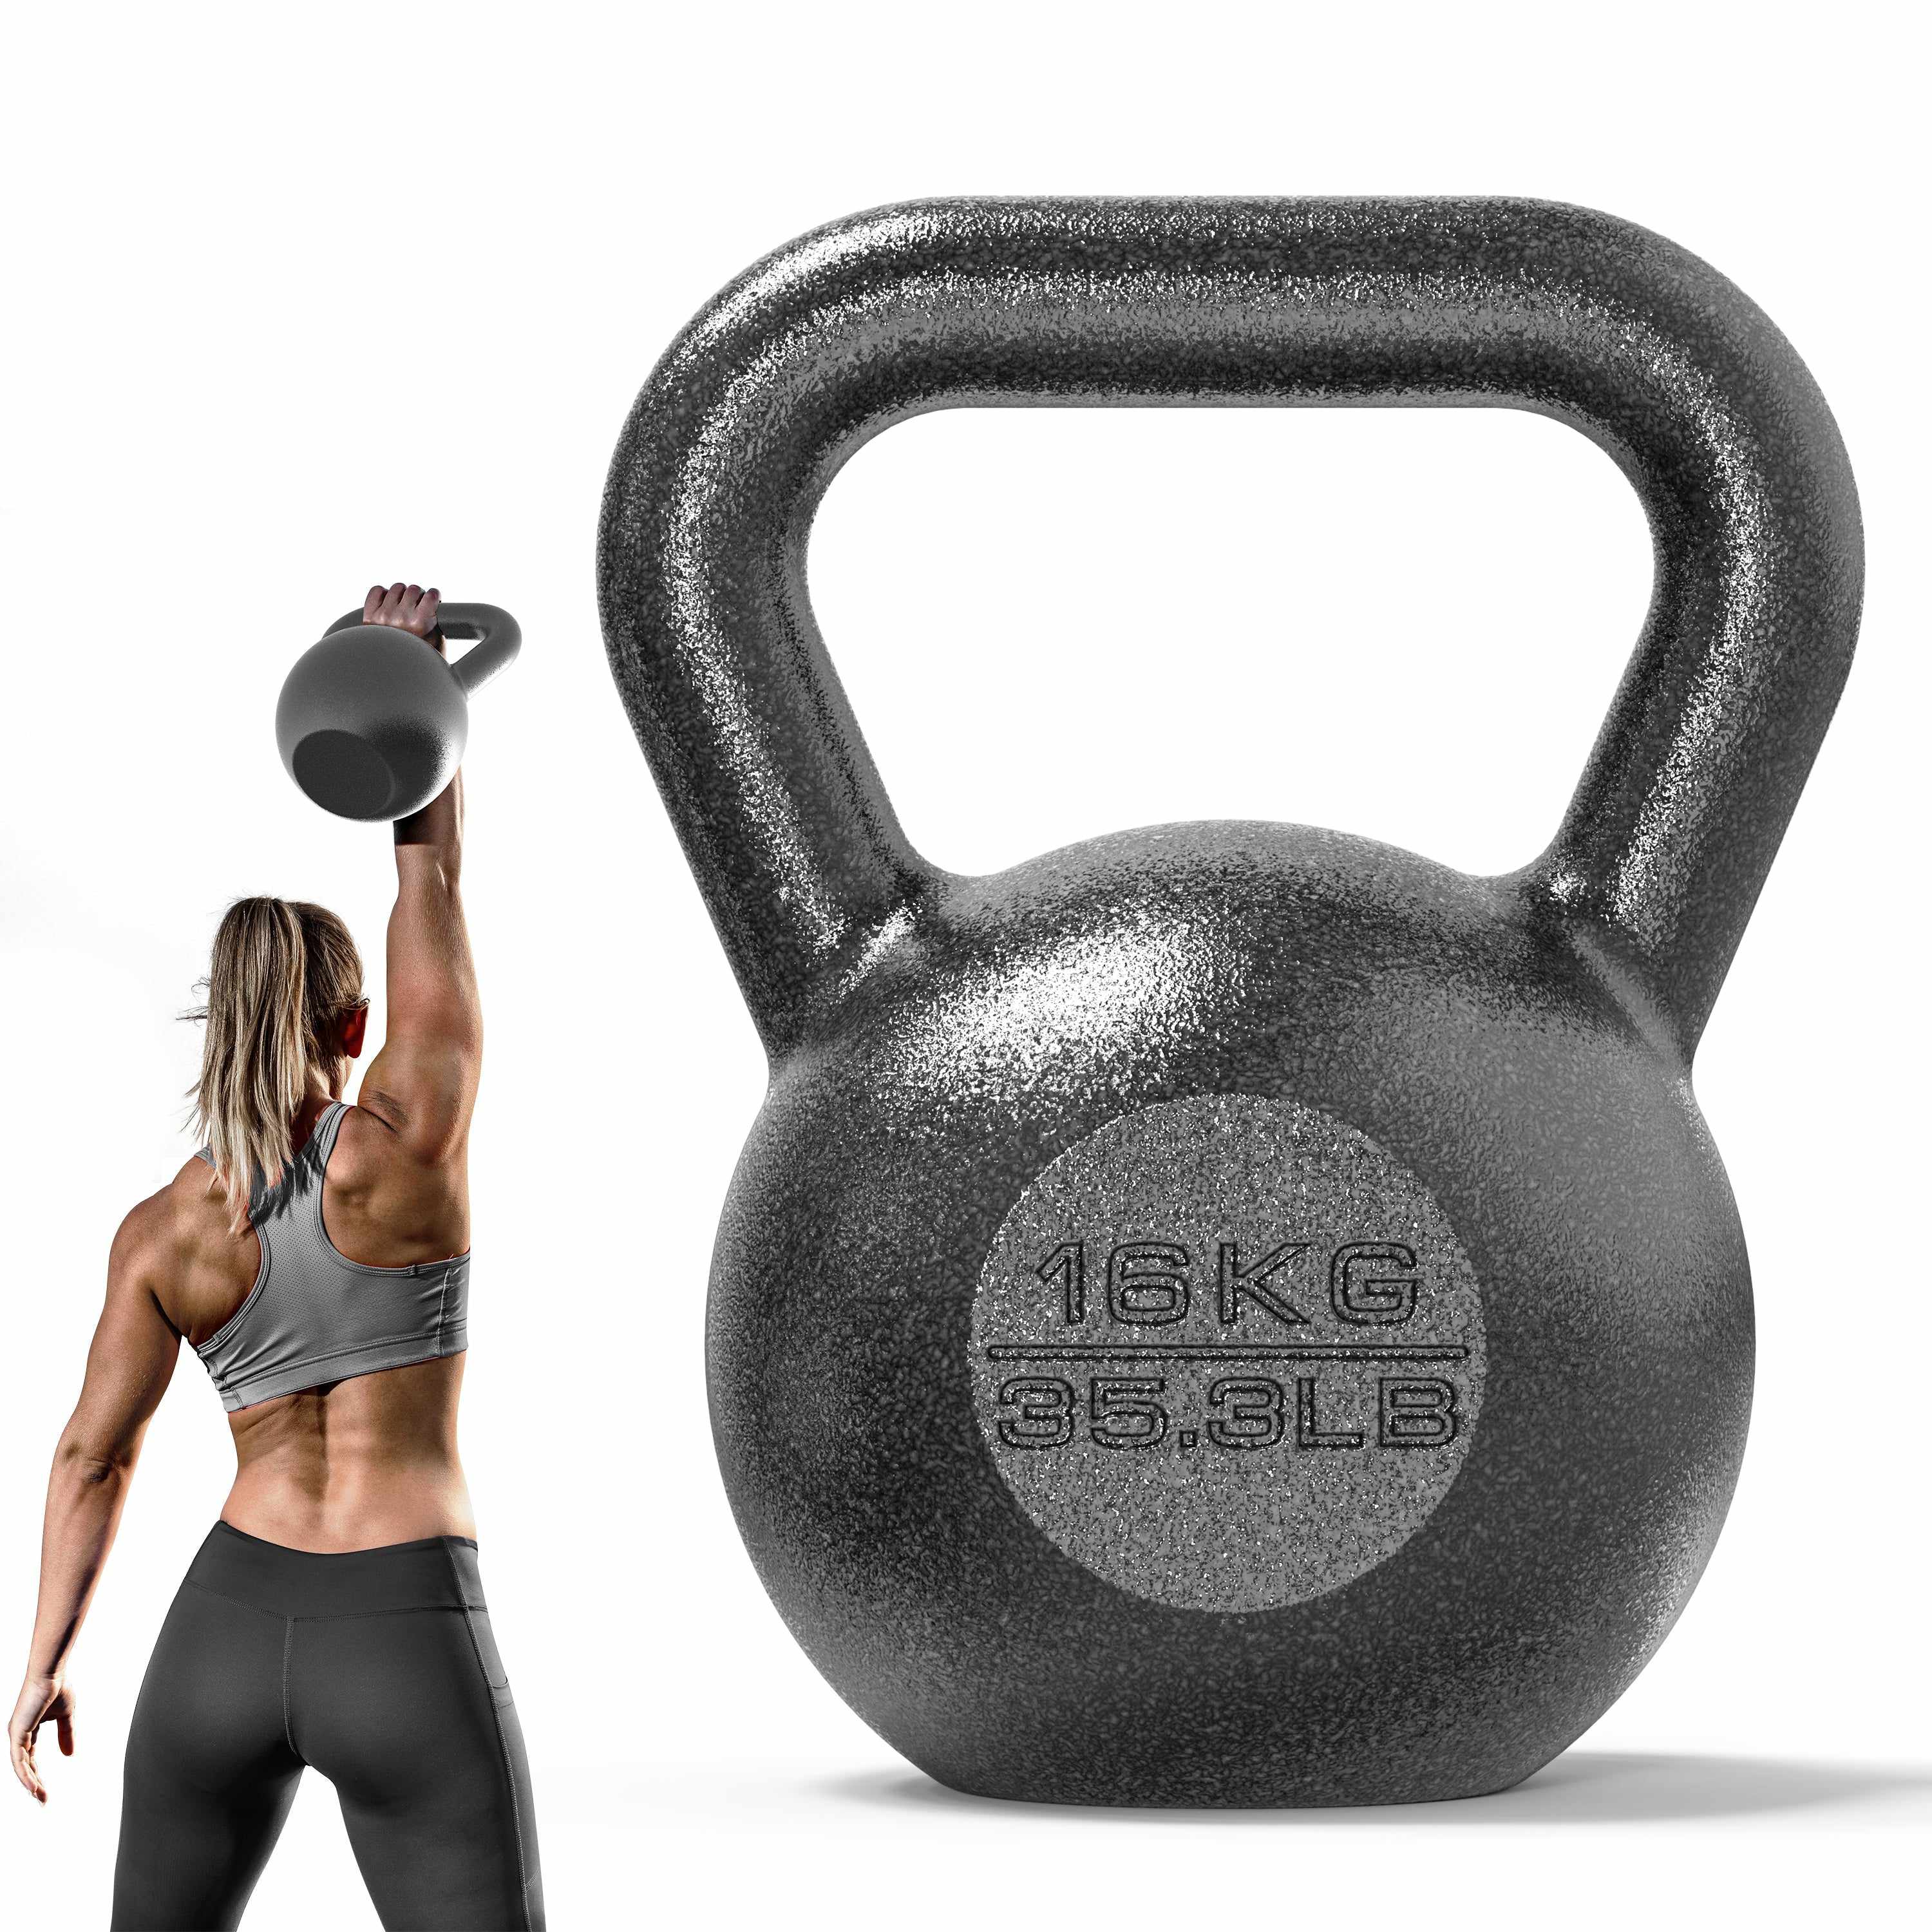 Cast Iron Kettlebell 10Kg 12Kg 16K 20Kg, Metal Kettle Bell Weight, Durable